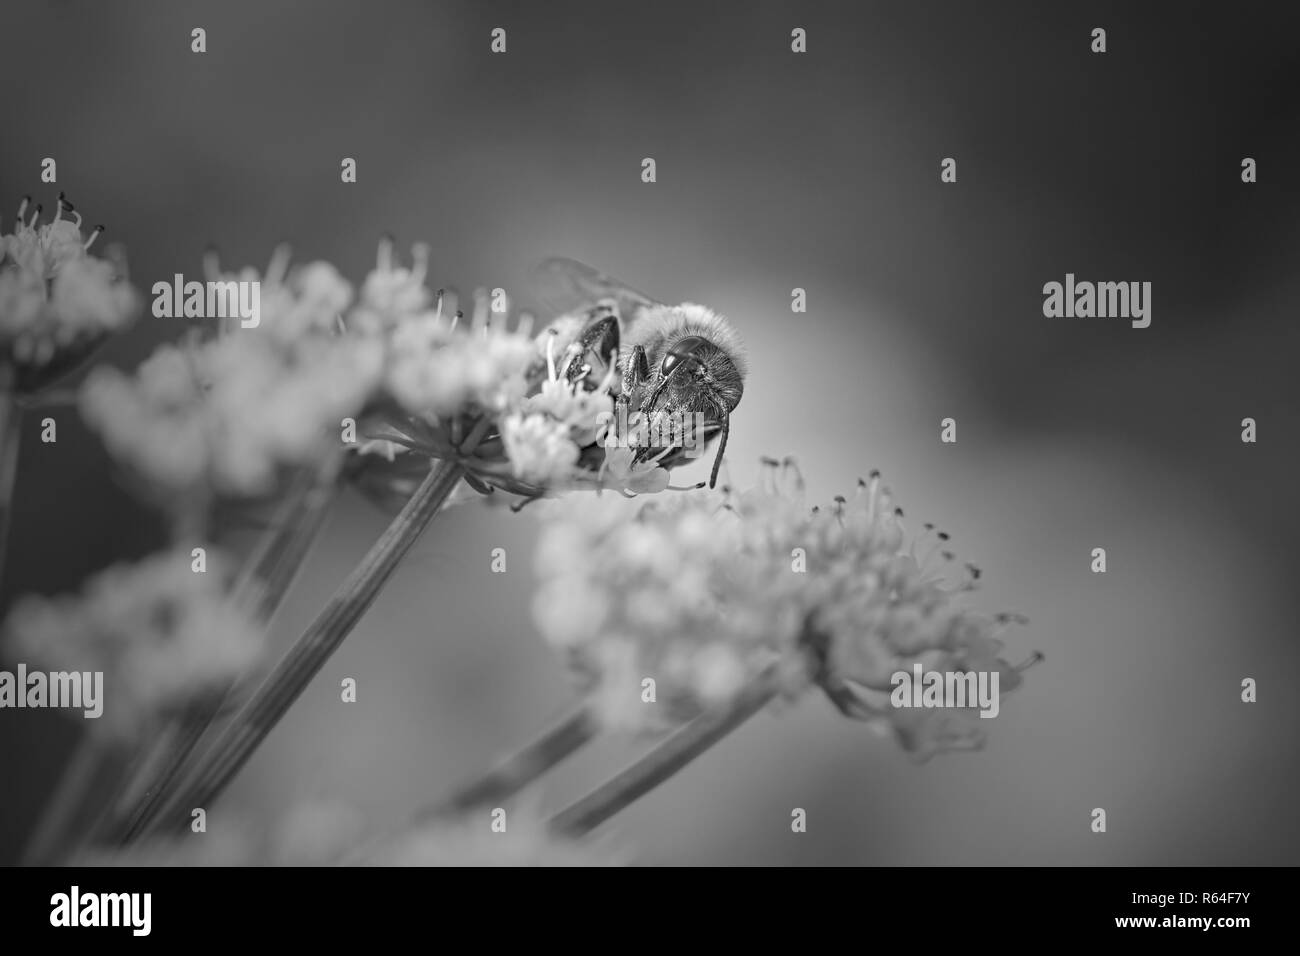 Macro d'une abeille en suçant le pollen de fleurs blanches sauvages. Converti en noir et blanc. Banque D'Images